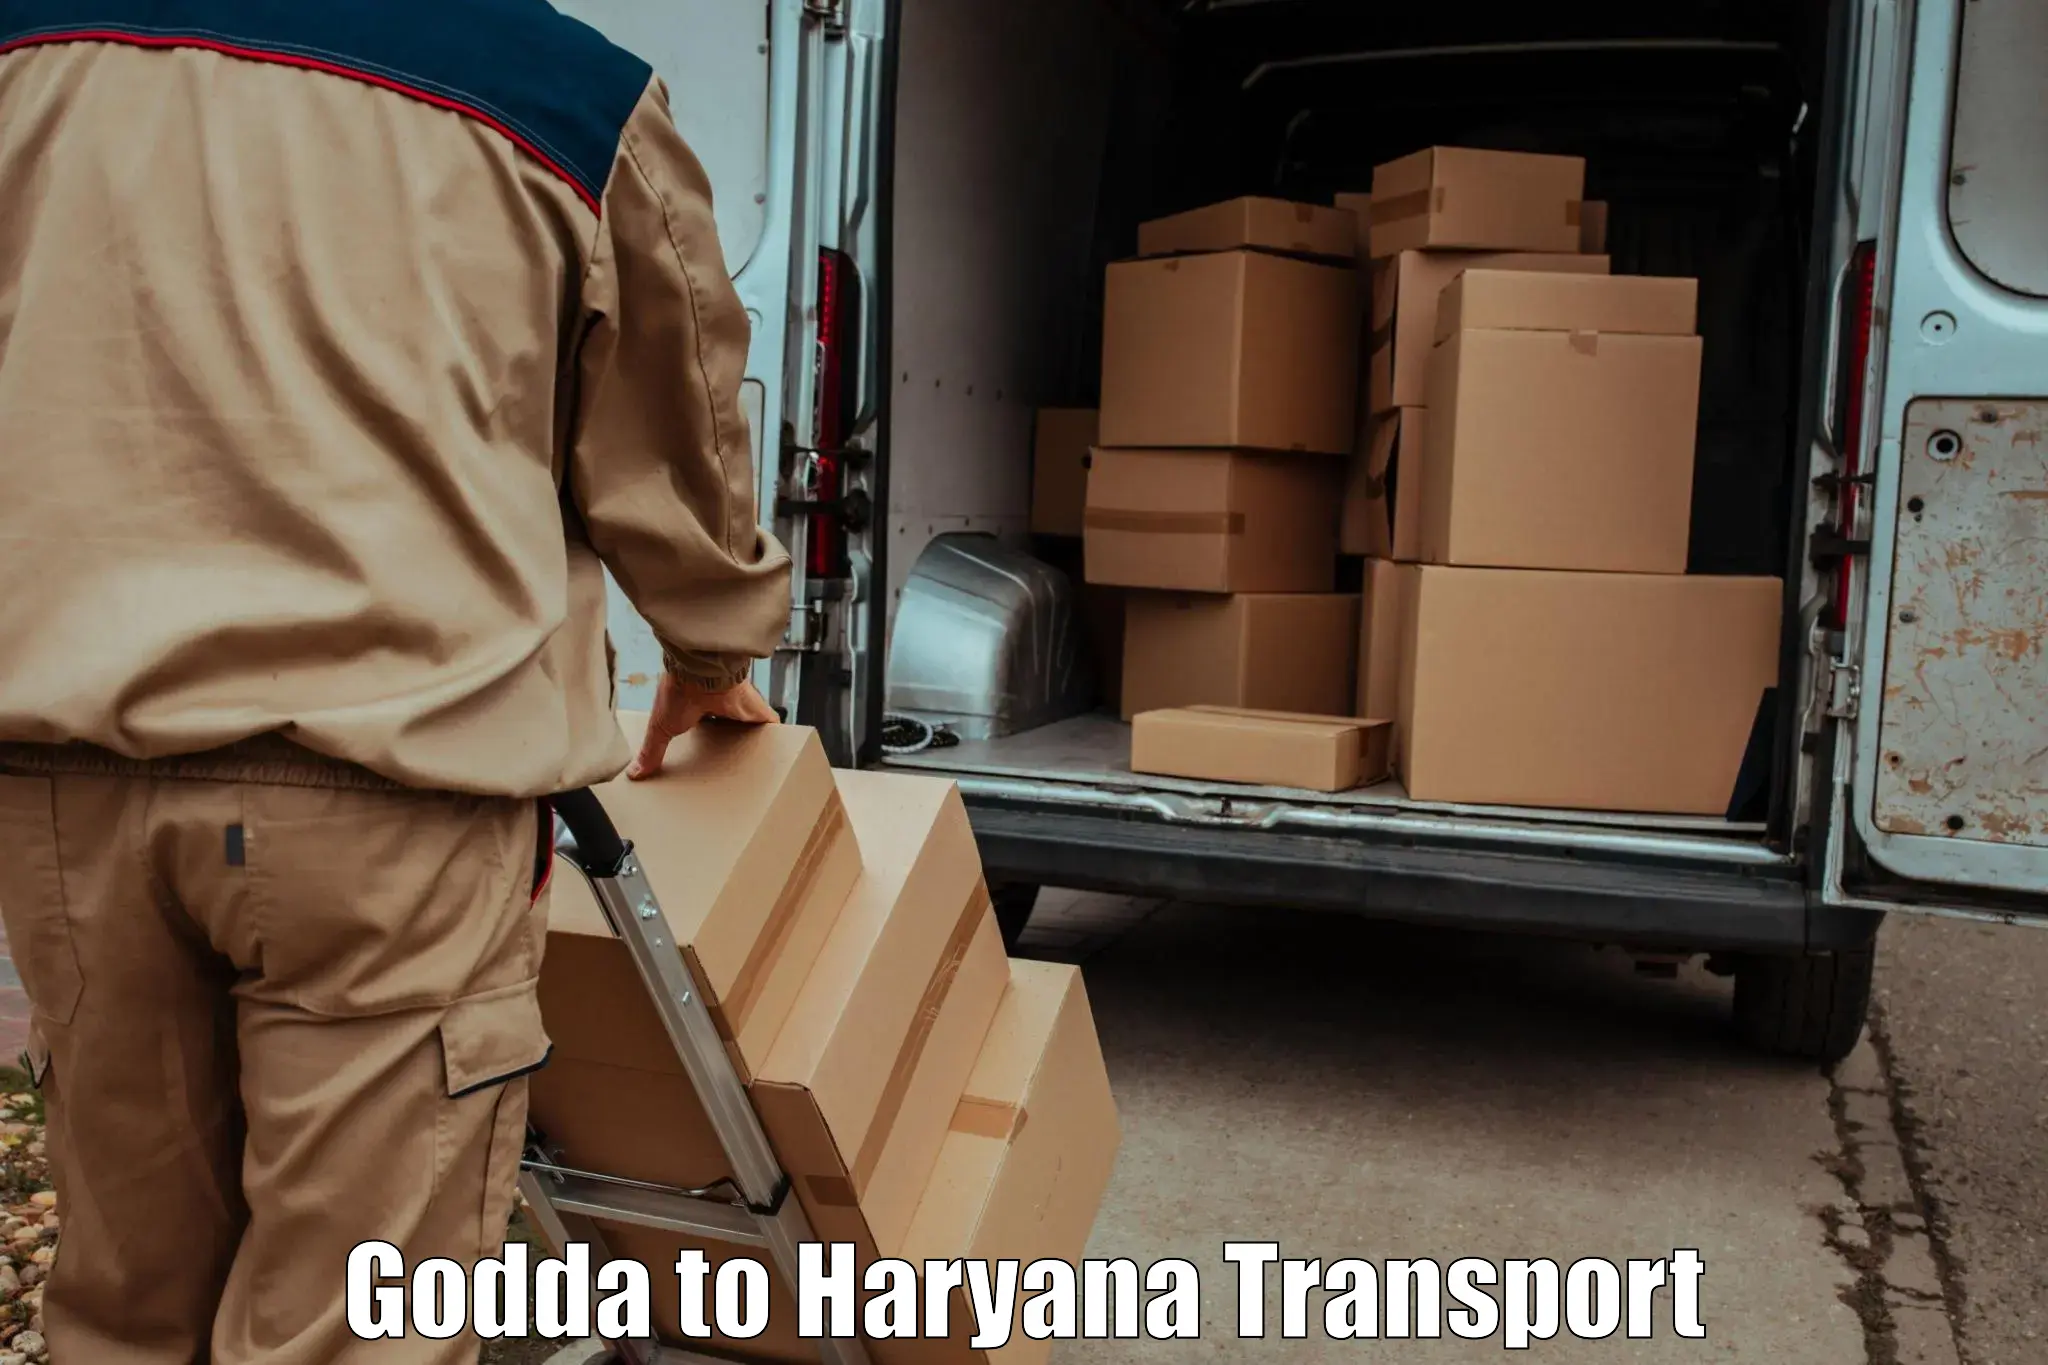 Nearest transport service Godda to Loharu